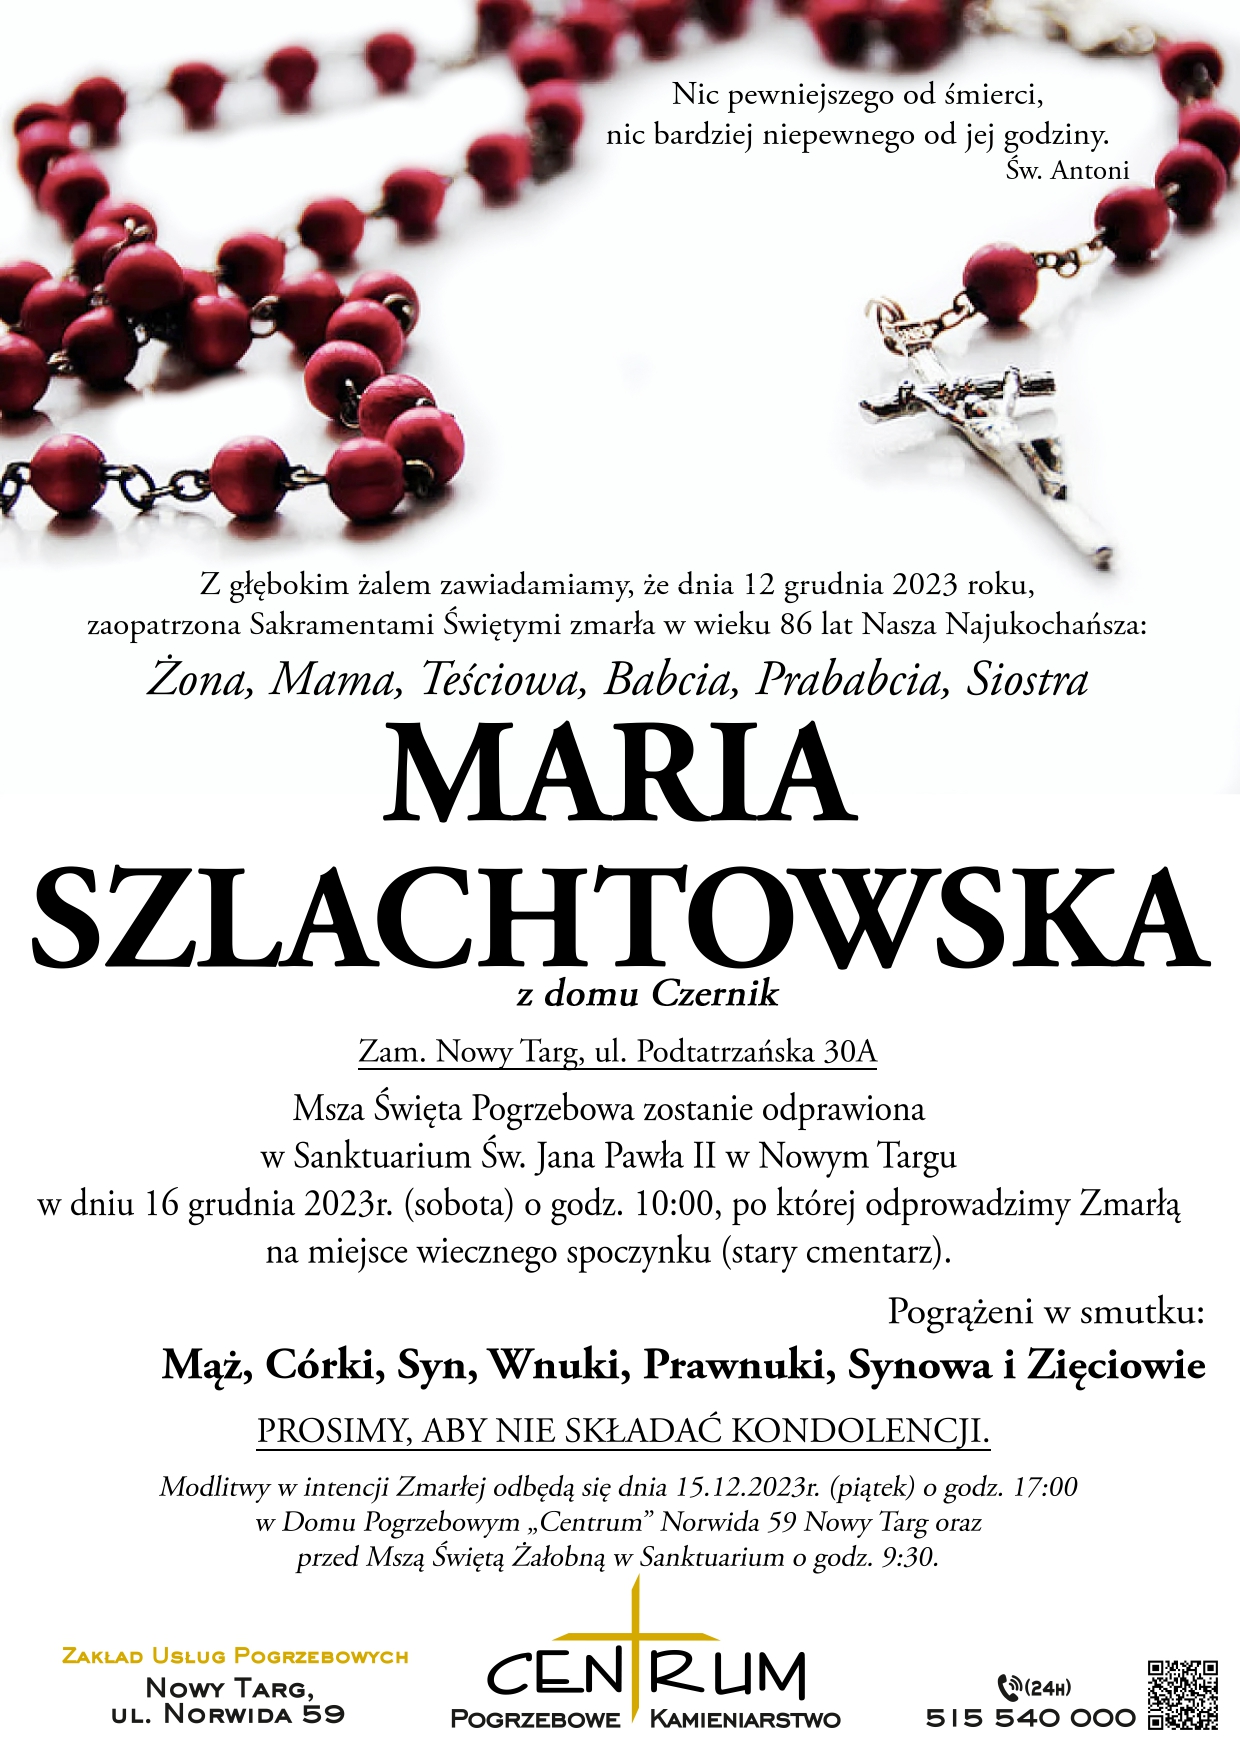 Maria Szlachtowska